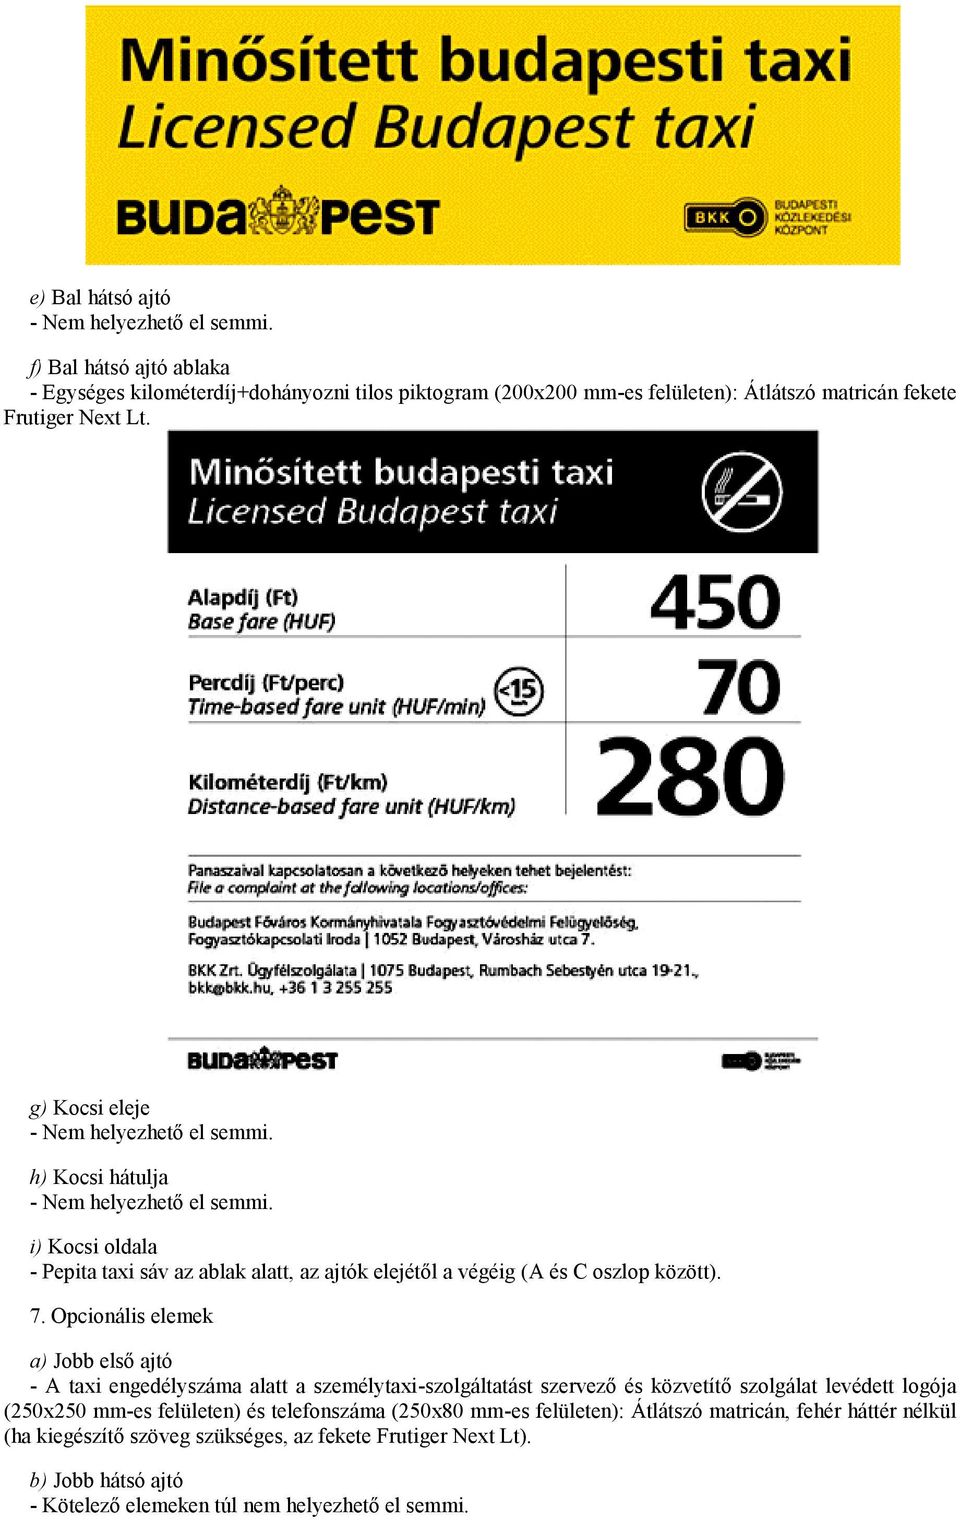 Opcionális elemek a) Jobb első ajtó - A taxi engedélyszáma alatt a személytaxi-szolgáltatást szervező és közvetítő szolgálat levédett logója (250x250 mm-es felületen) és telefonszáma